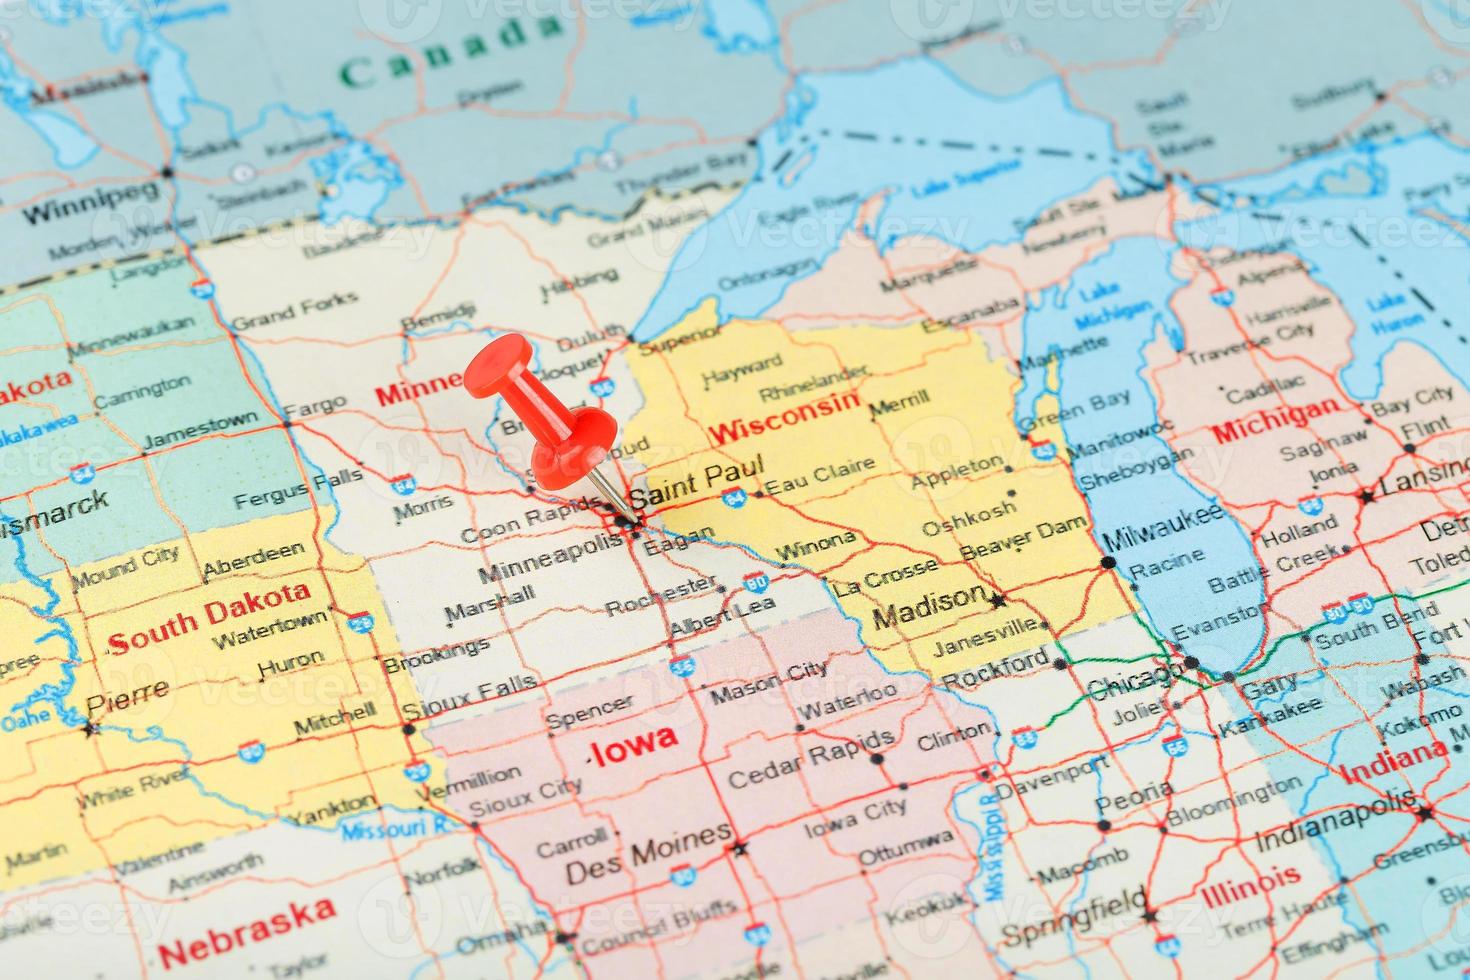 rote schreibnadel auf einer karte von usa, minnesota und der hauptstadt saint paul. Nahaufnahme der Karte von Minnesota mit rotem Reißzwecken foto